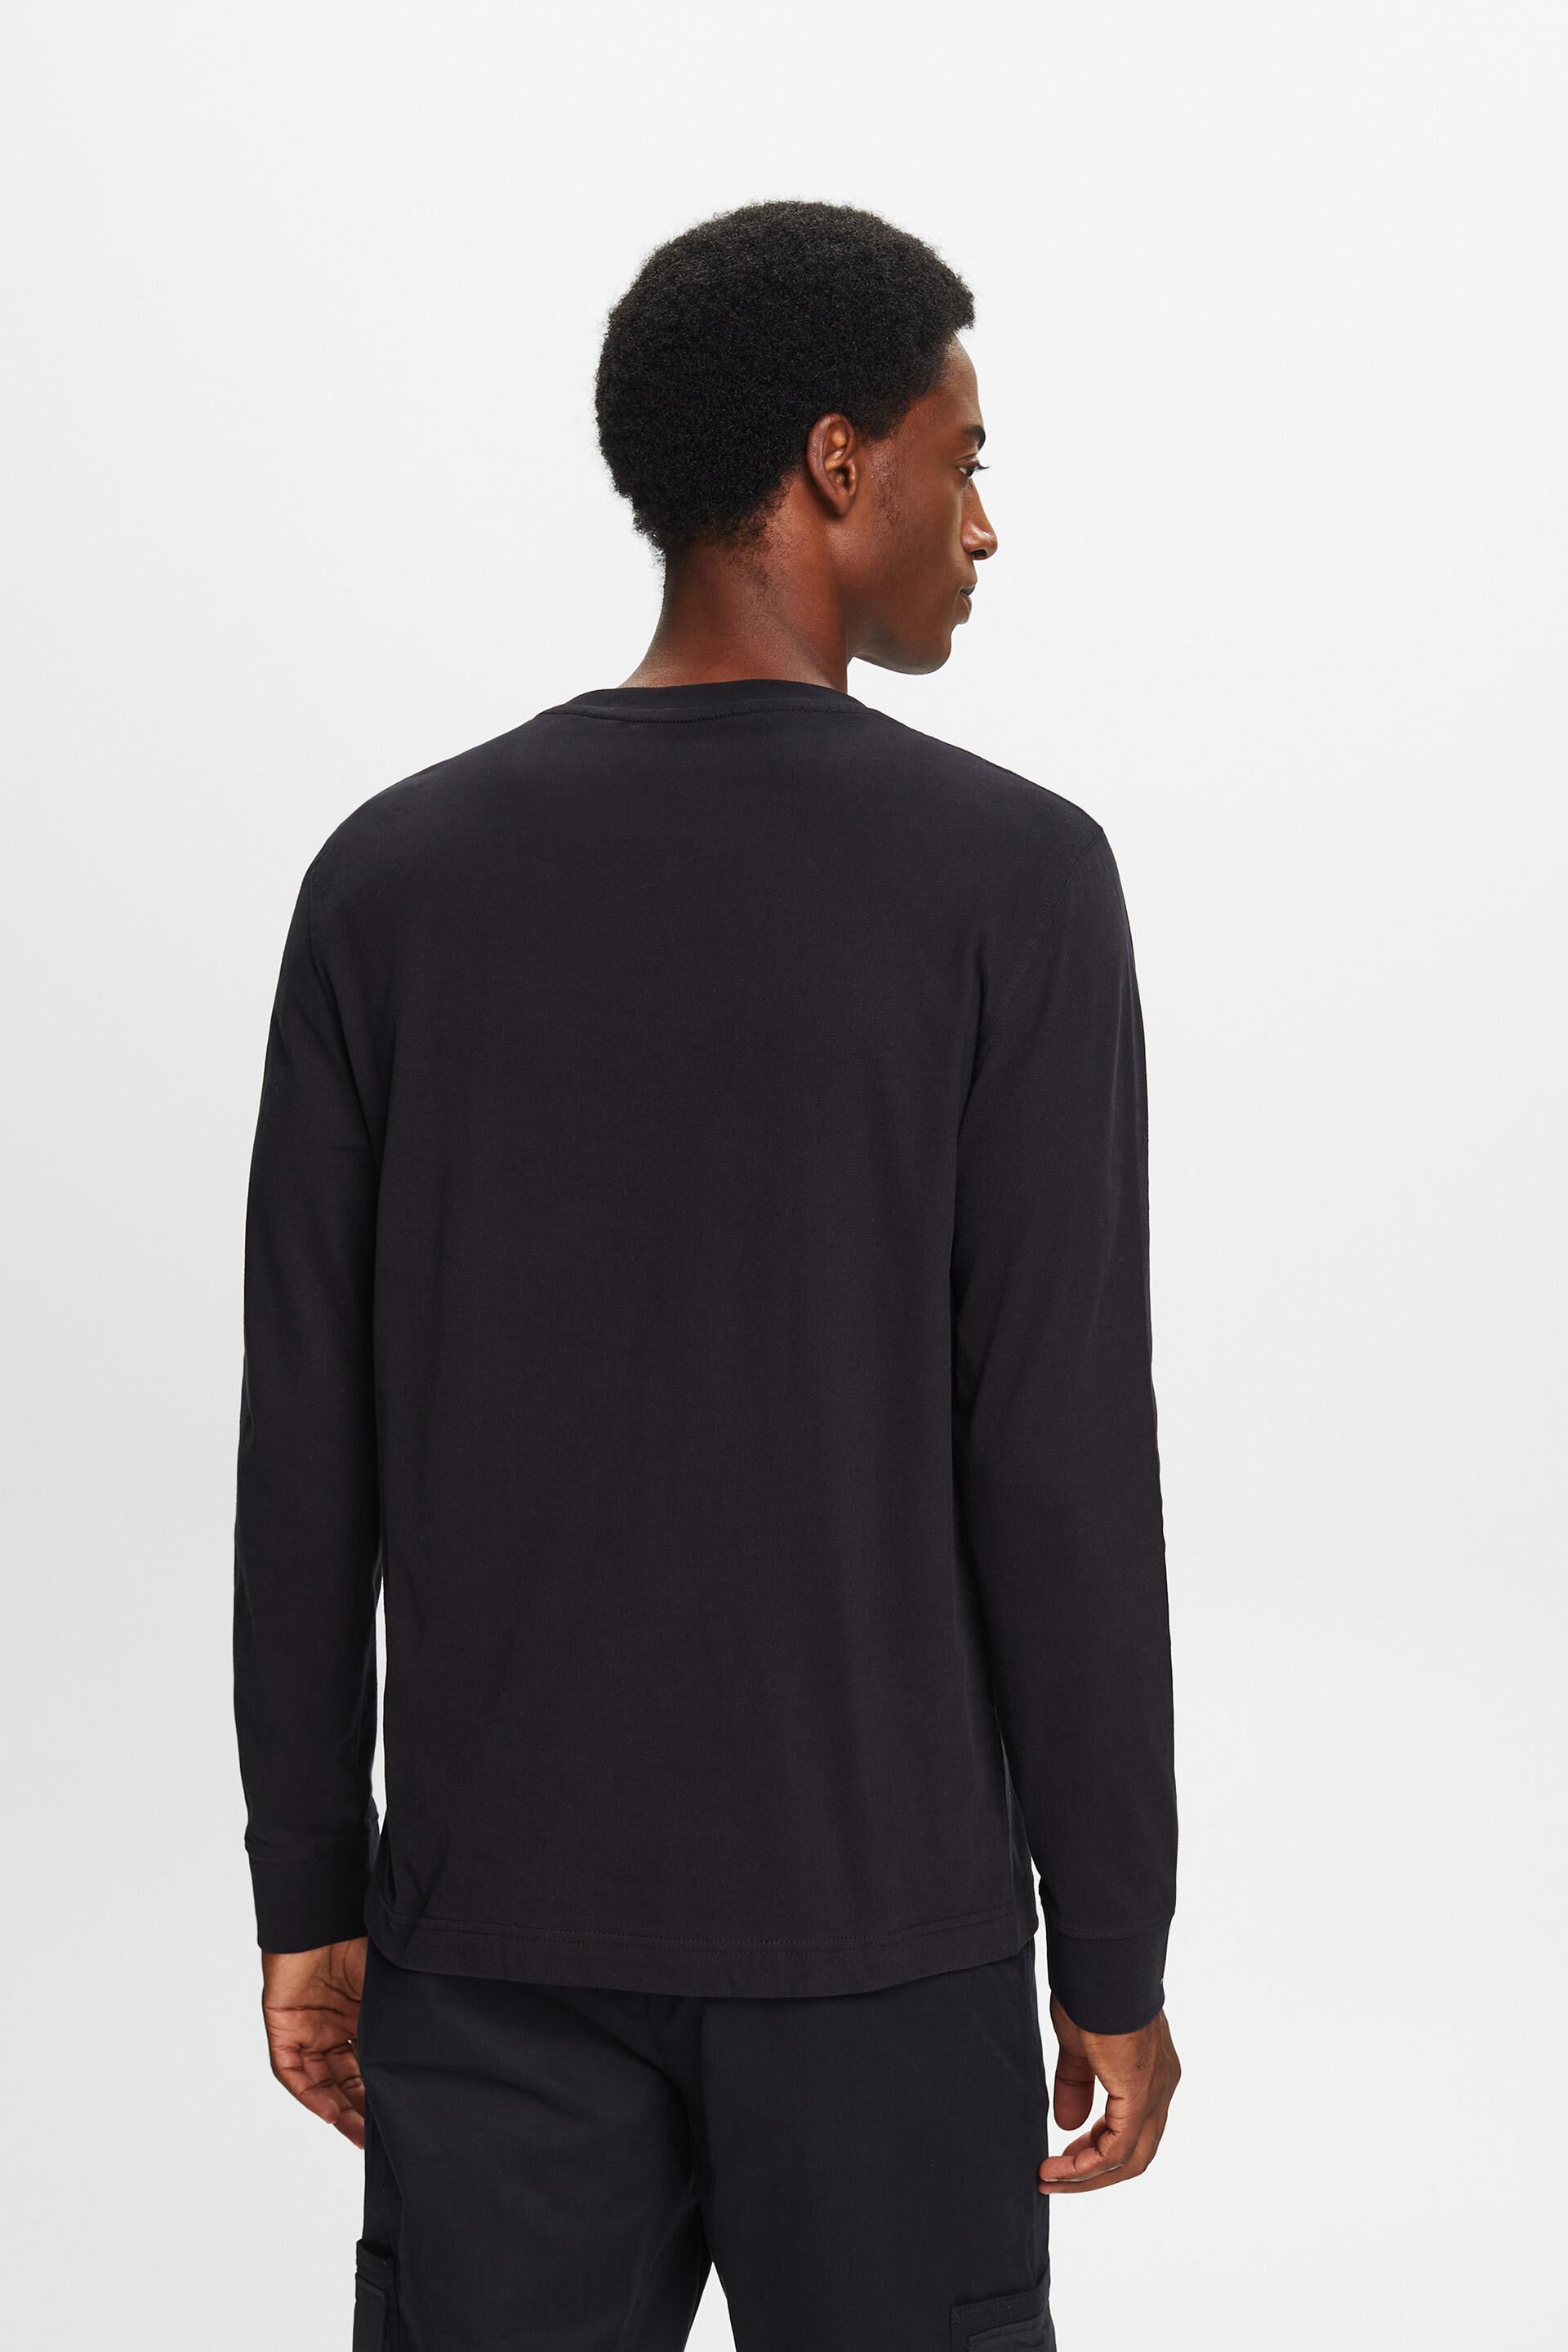 Crewneck Long Sleeve T-Shirt at our online shop - ESPRIT